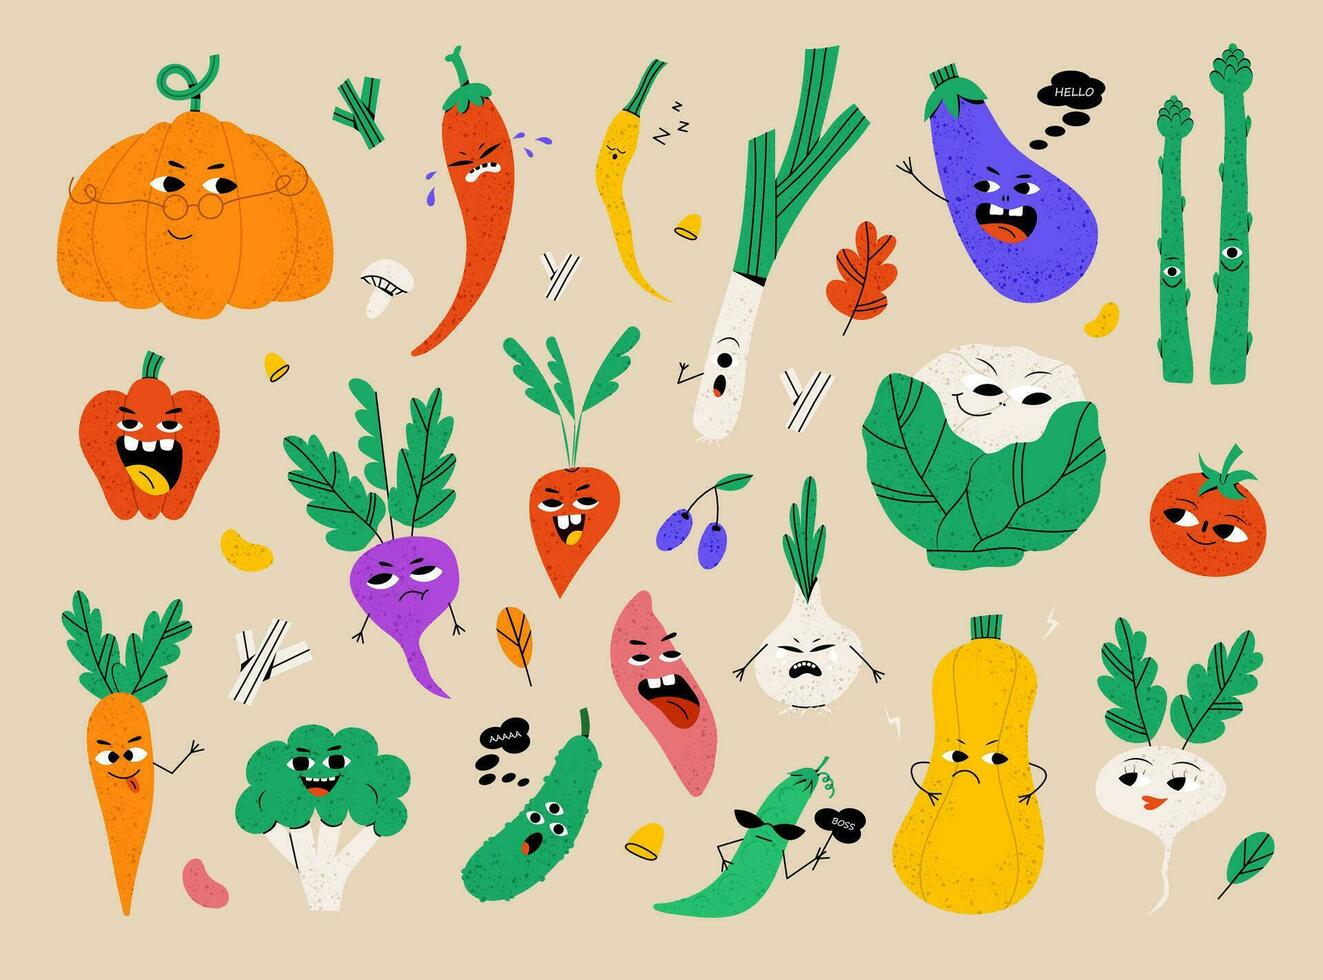 gracioso dibujos animados vegetal caracteres con varios cara expresión. sano comida vector ilustración. cosecha colección en plano estilo demostración diferente emociones contento sonriente sano comida colocar.